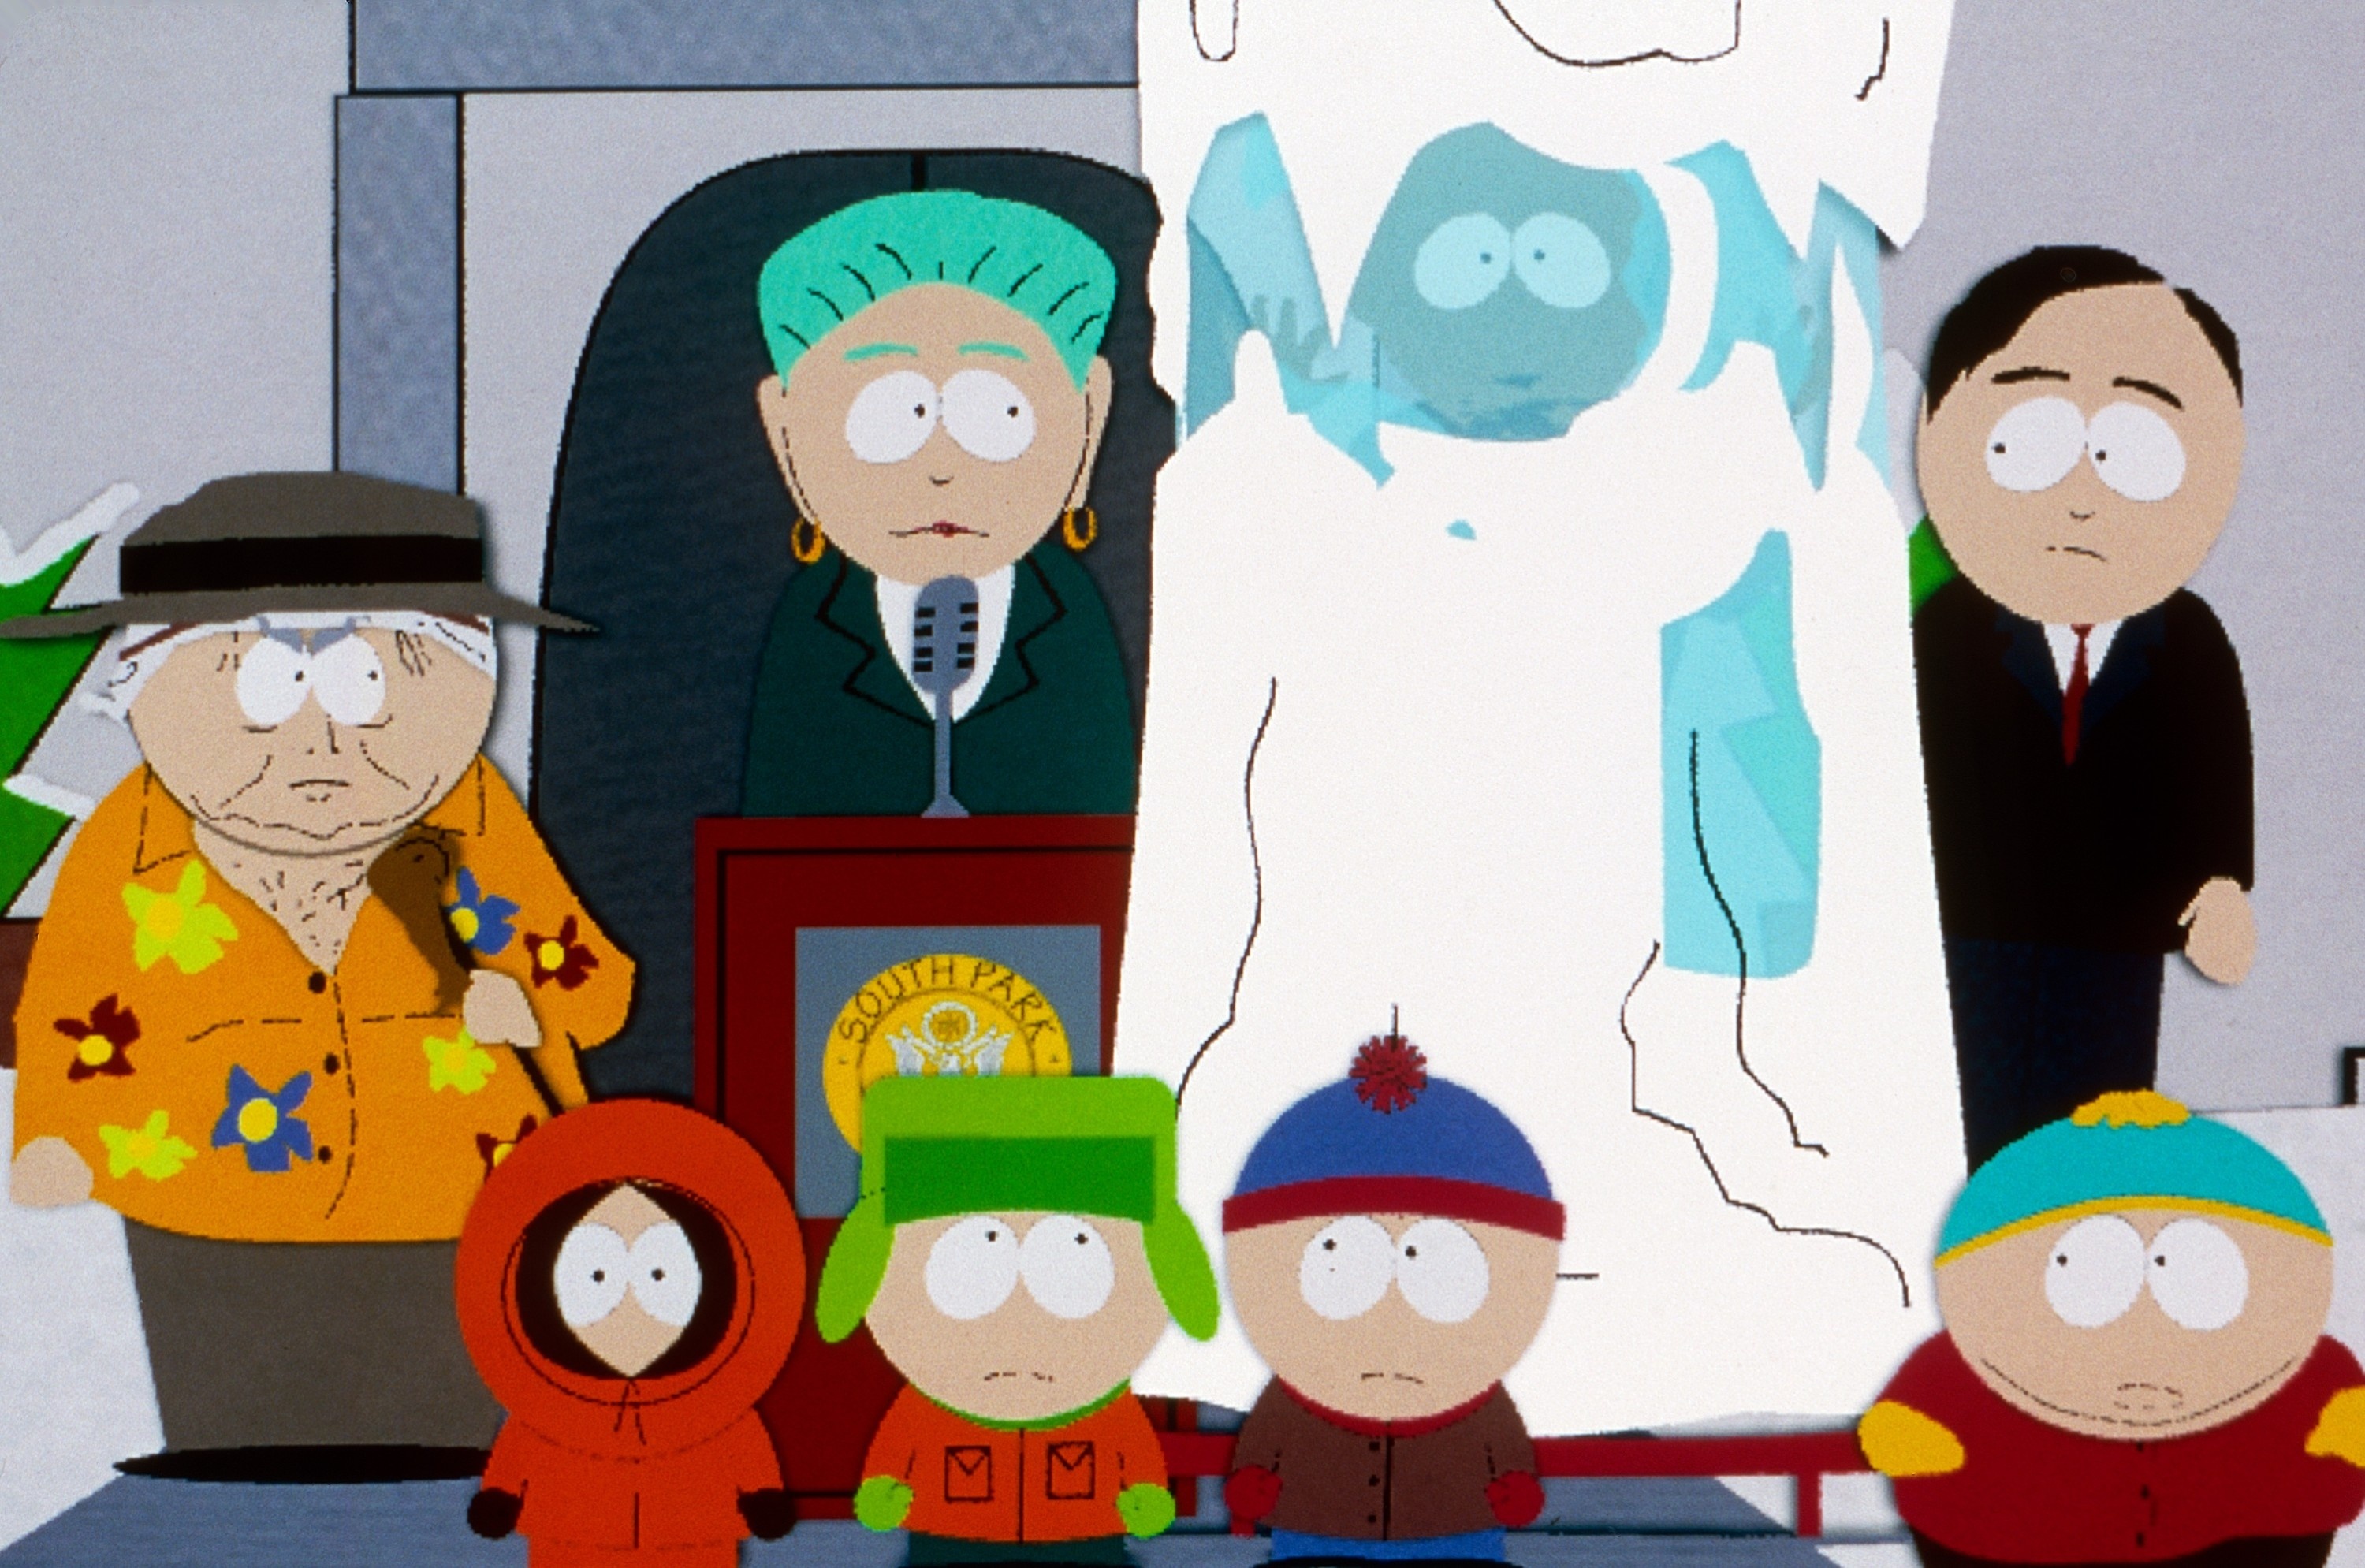 Barbra Streisand, która pojawiła się w serialu jako robot niszczący wszystko, stwierdziła, że „South Park” powinien być zakazany